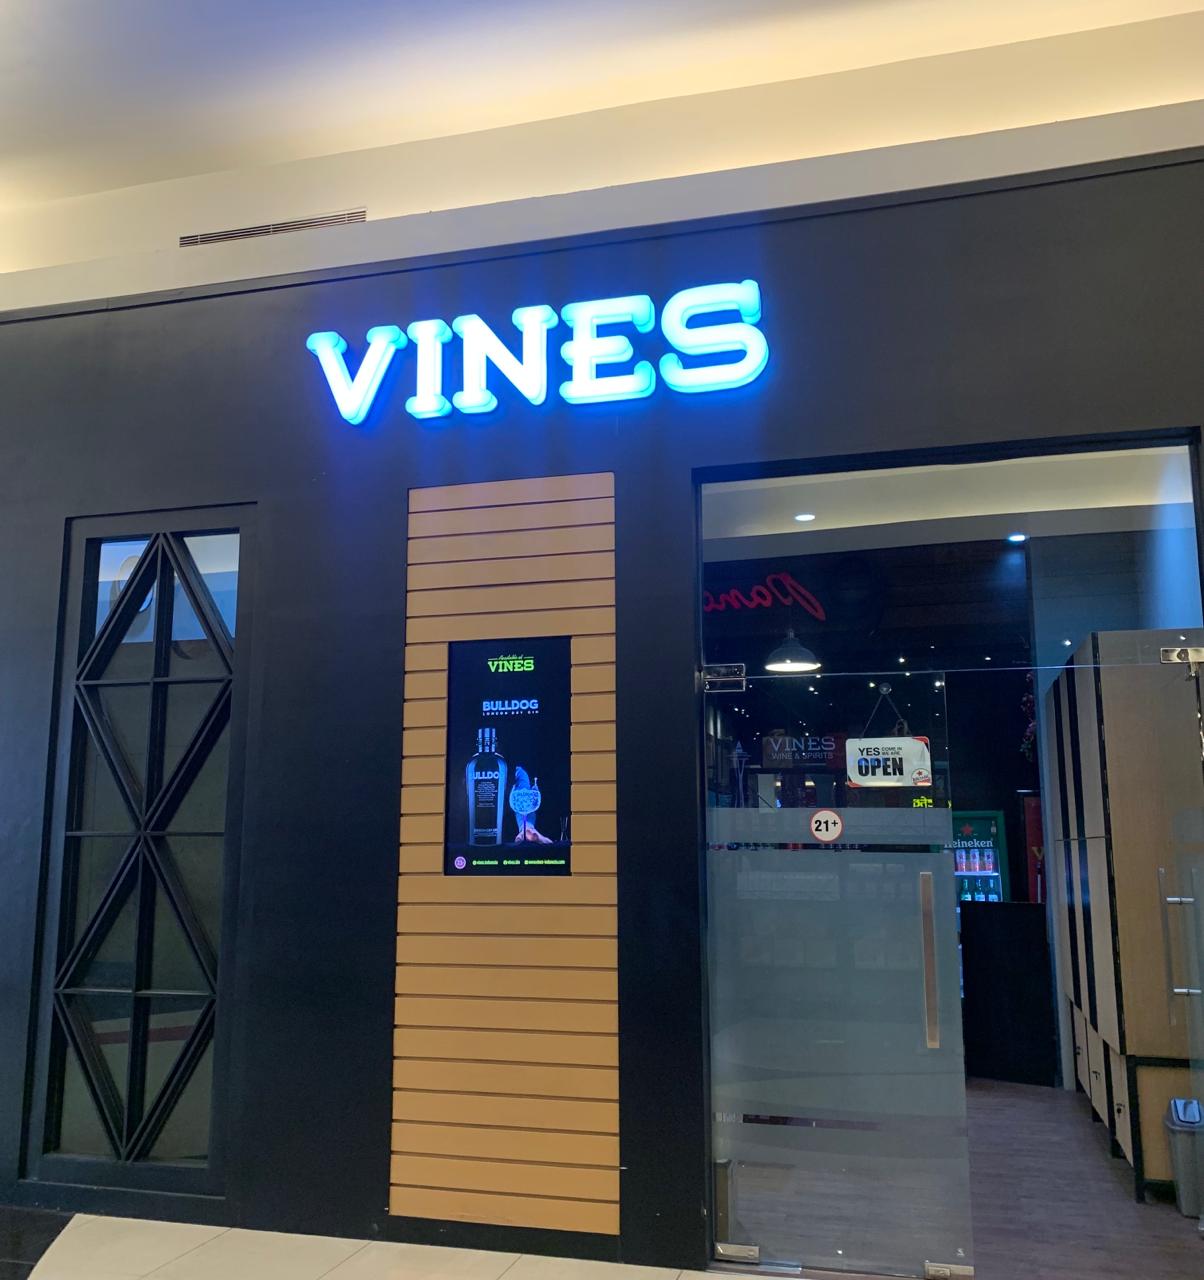 Vines Trans Studio Makassar Photo